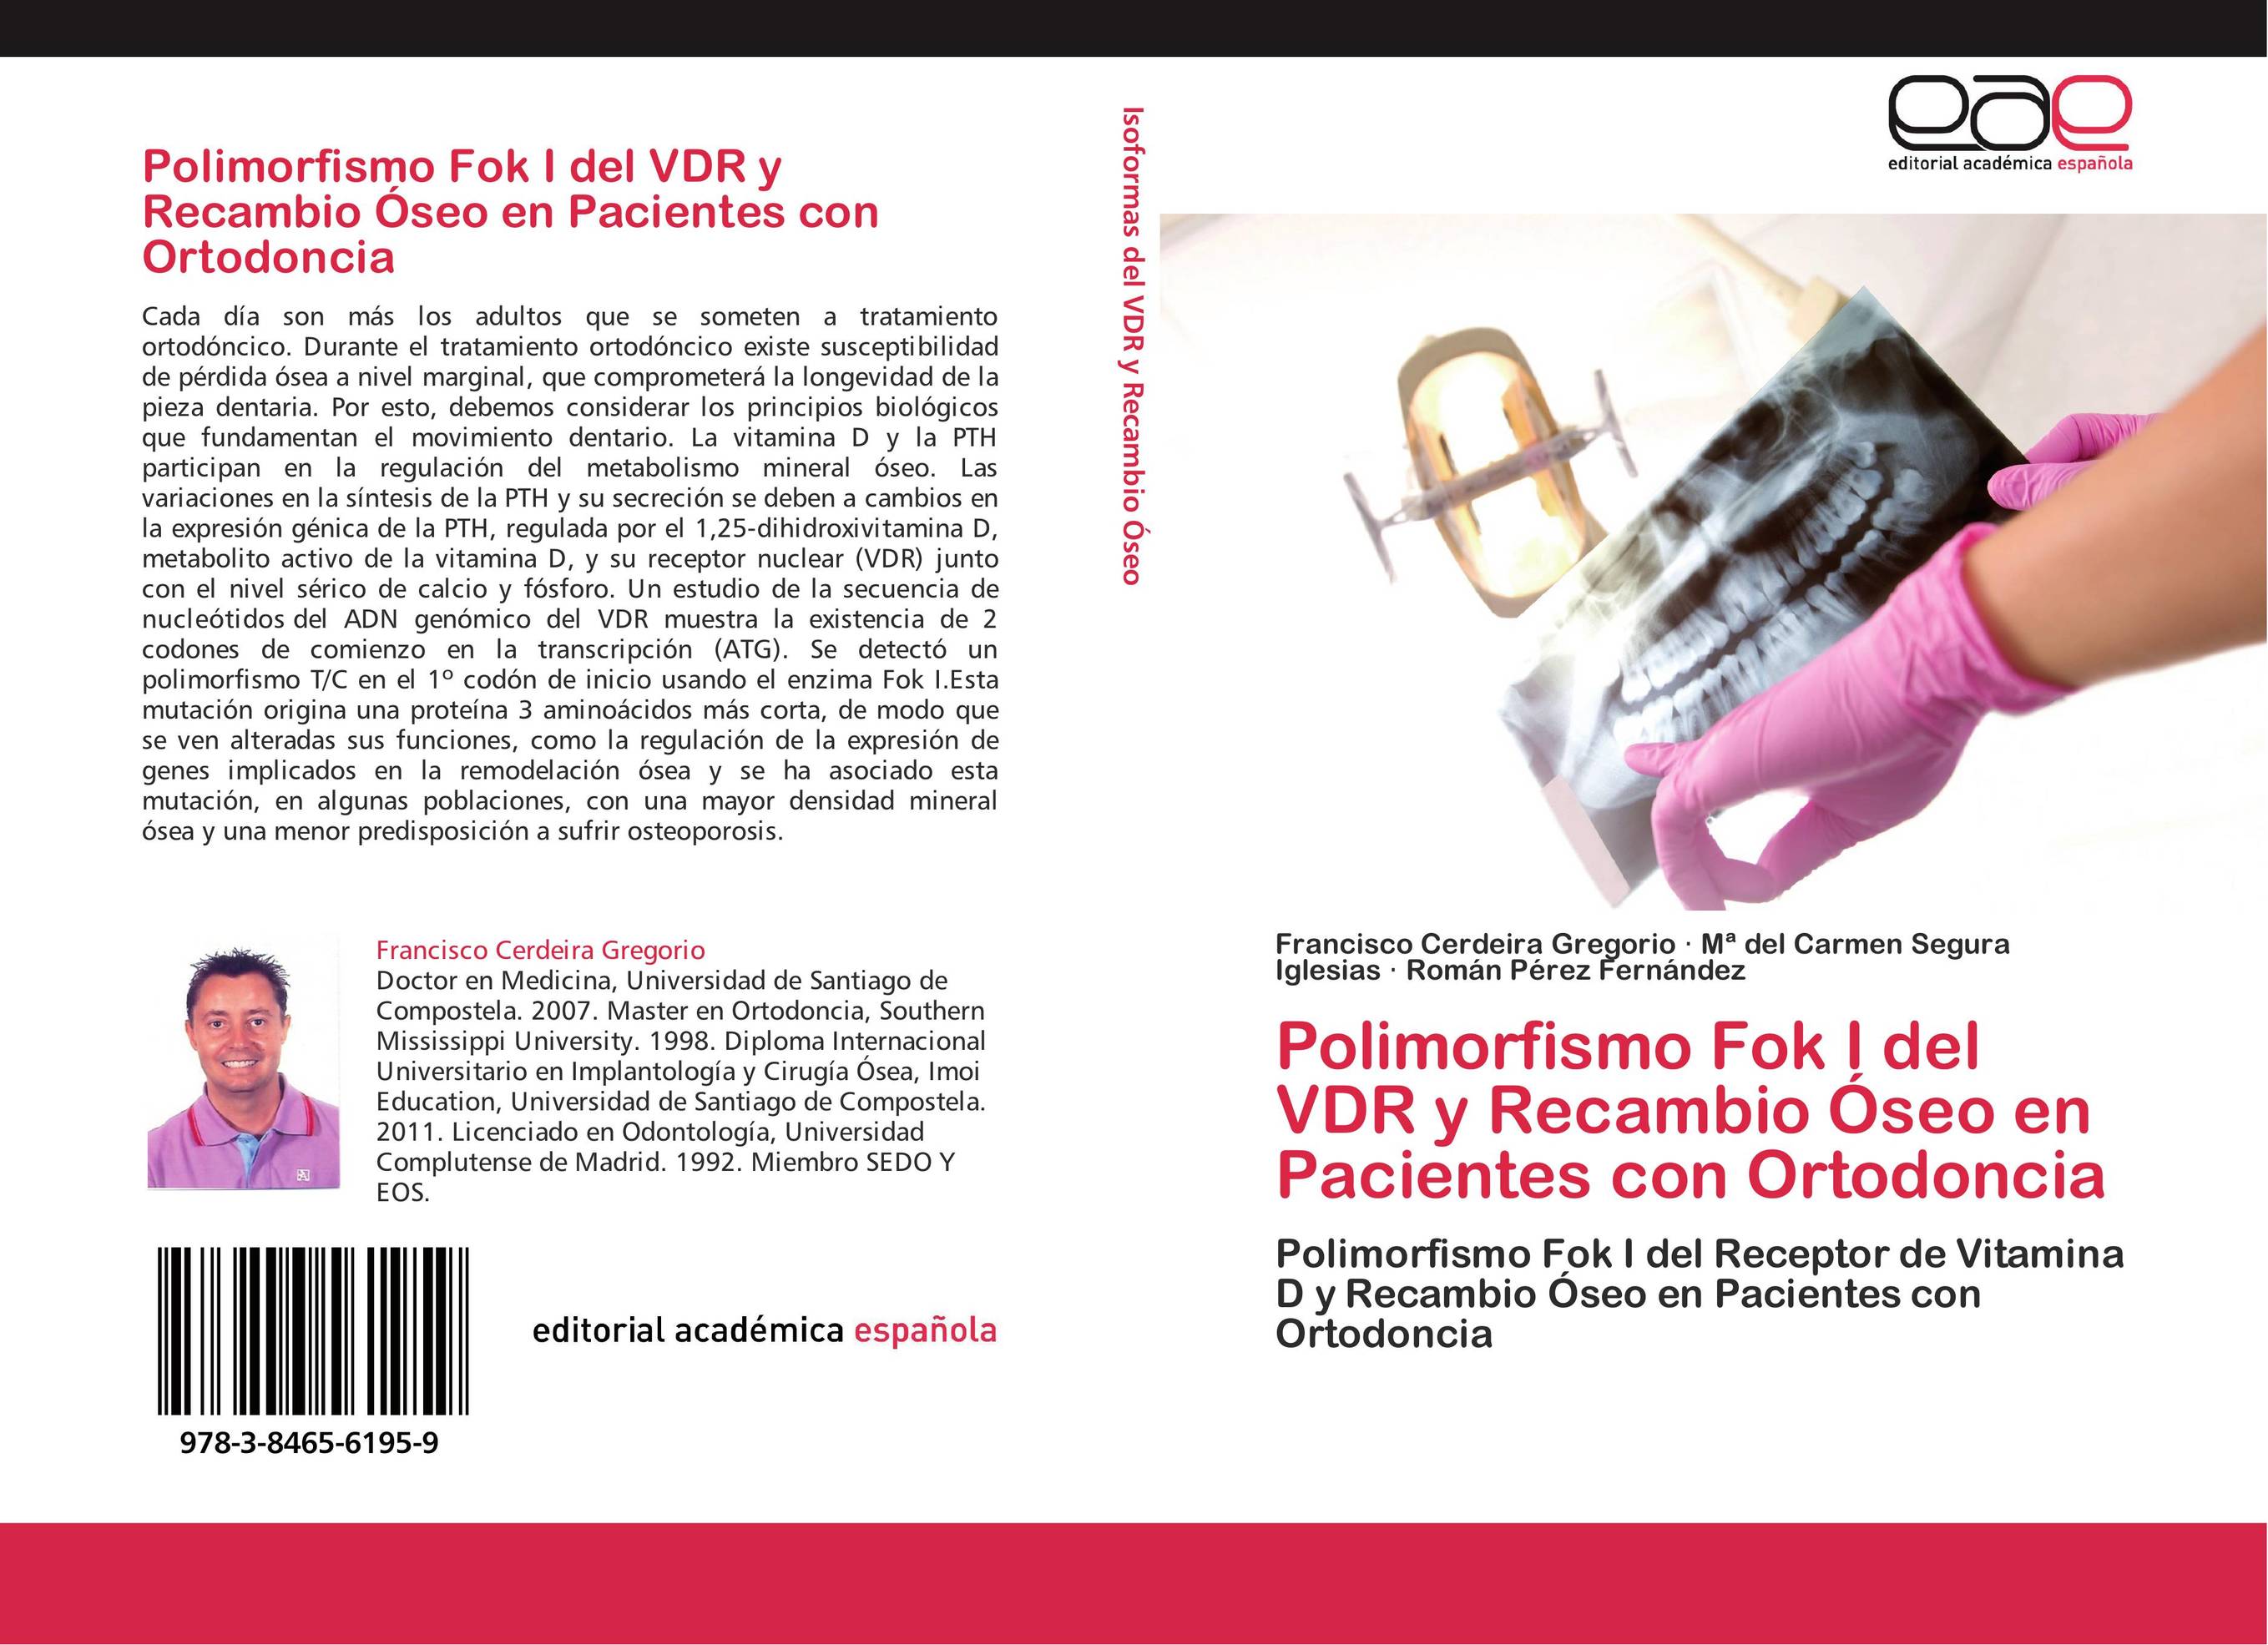 Polimorfismo Fok I del VDR y Recambio Óseo en Pacientes con Ortodoncia